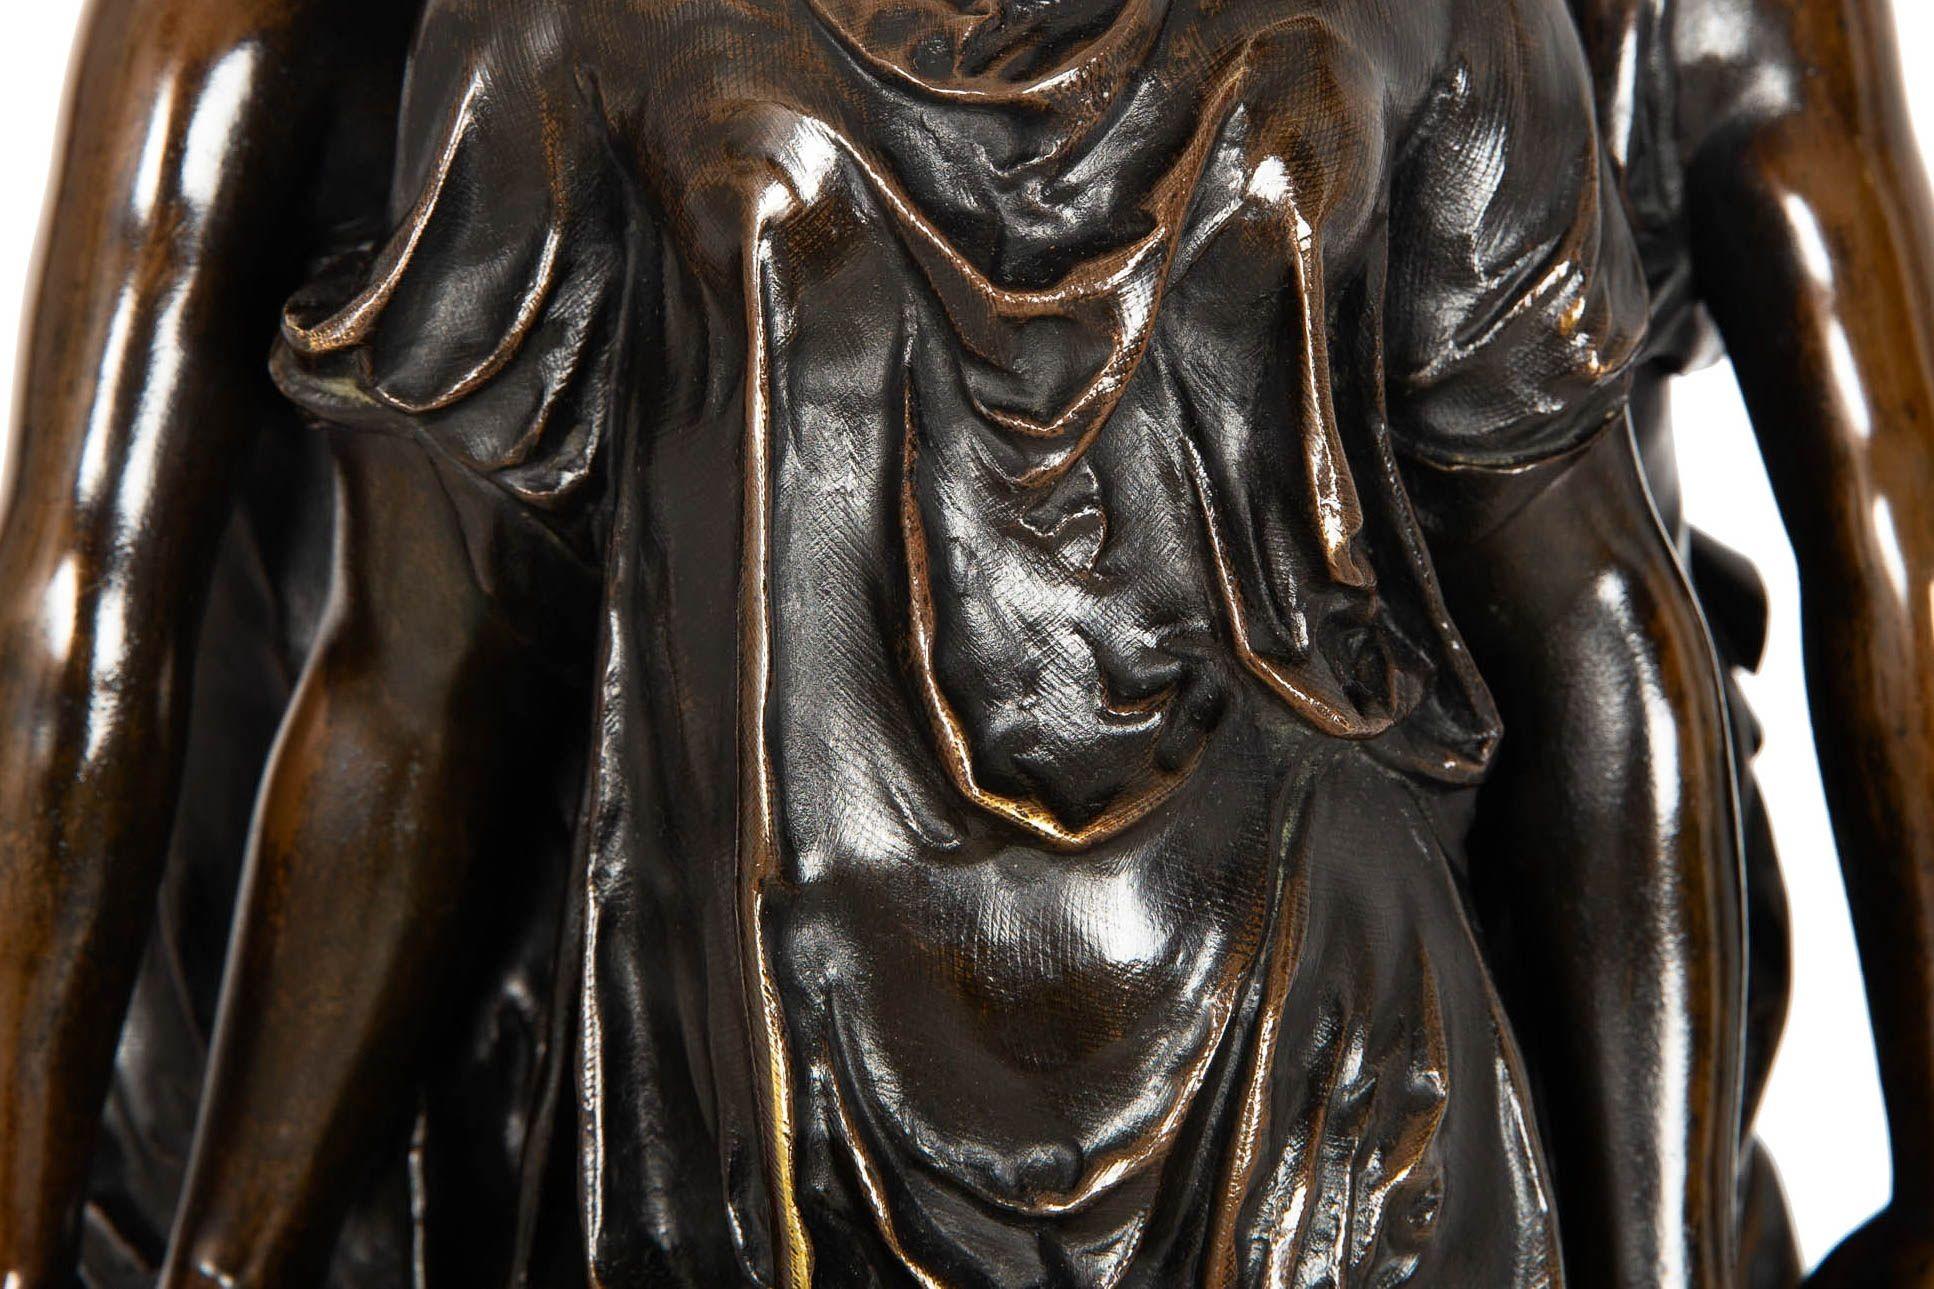 French Antique Bronze Sculpture “Three Graces” after Germain Pilon For Sale 5